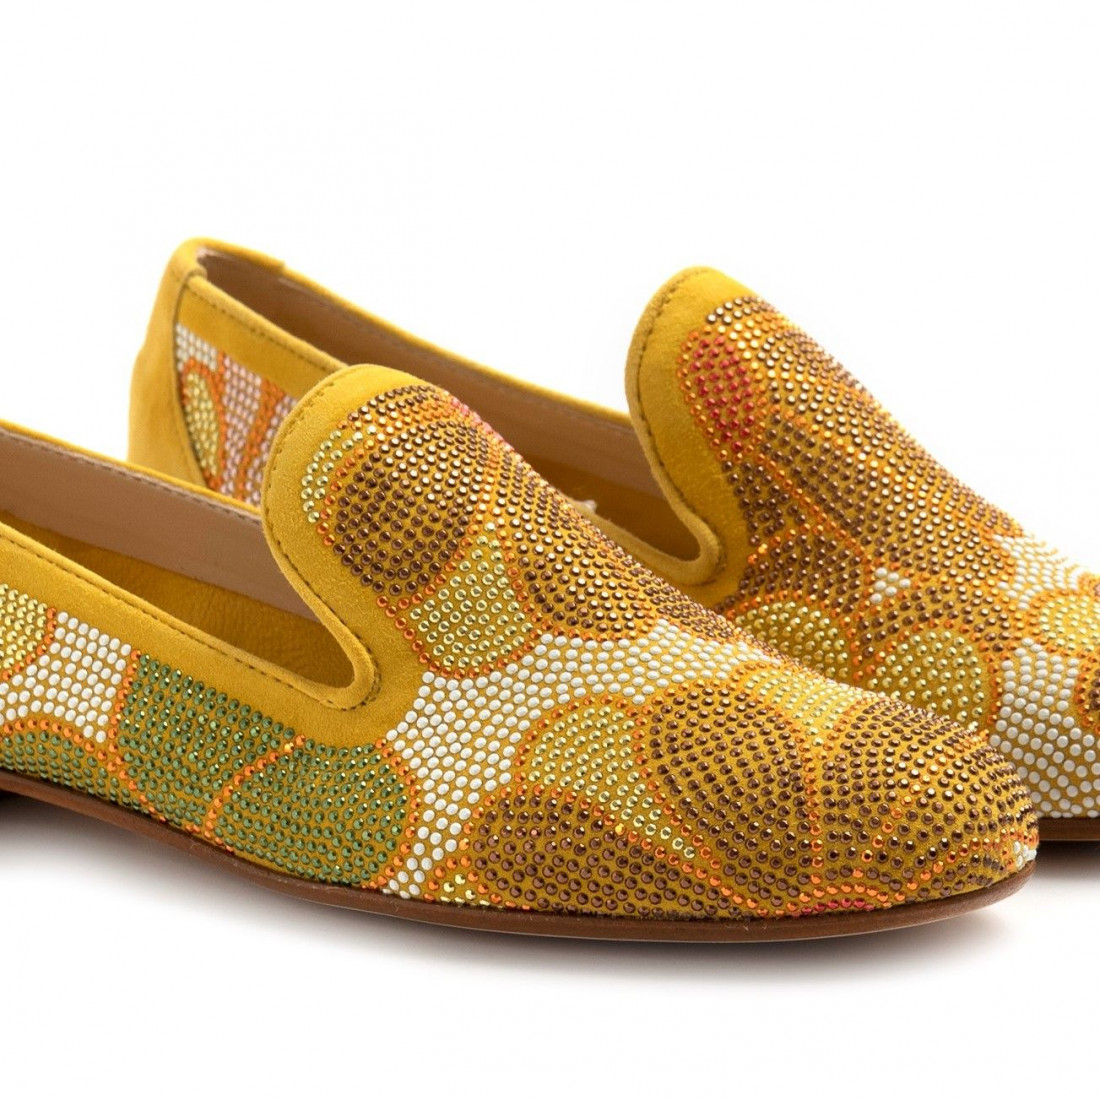 Belle Vie schoen model Via Danesi geel met gekleurde strass steentjes